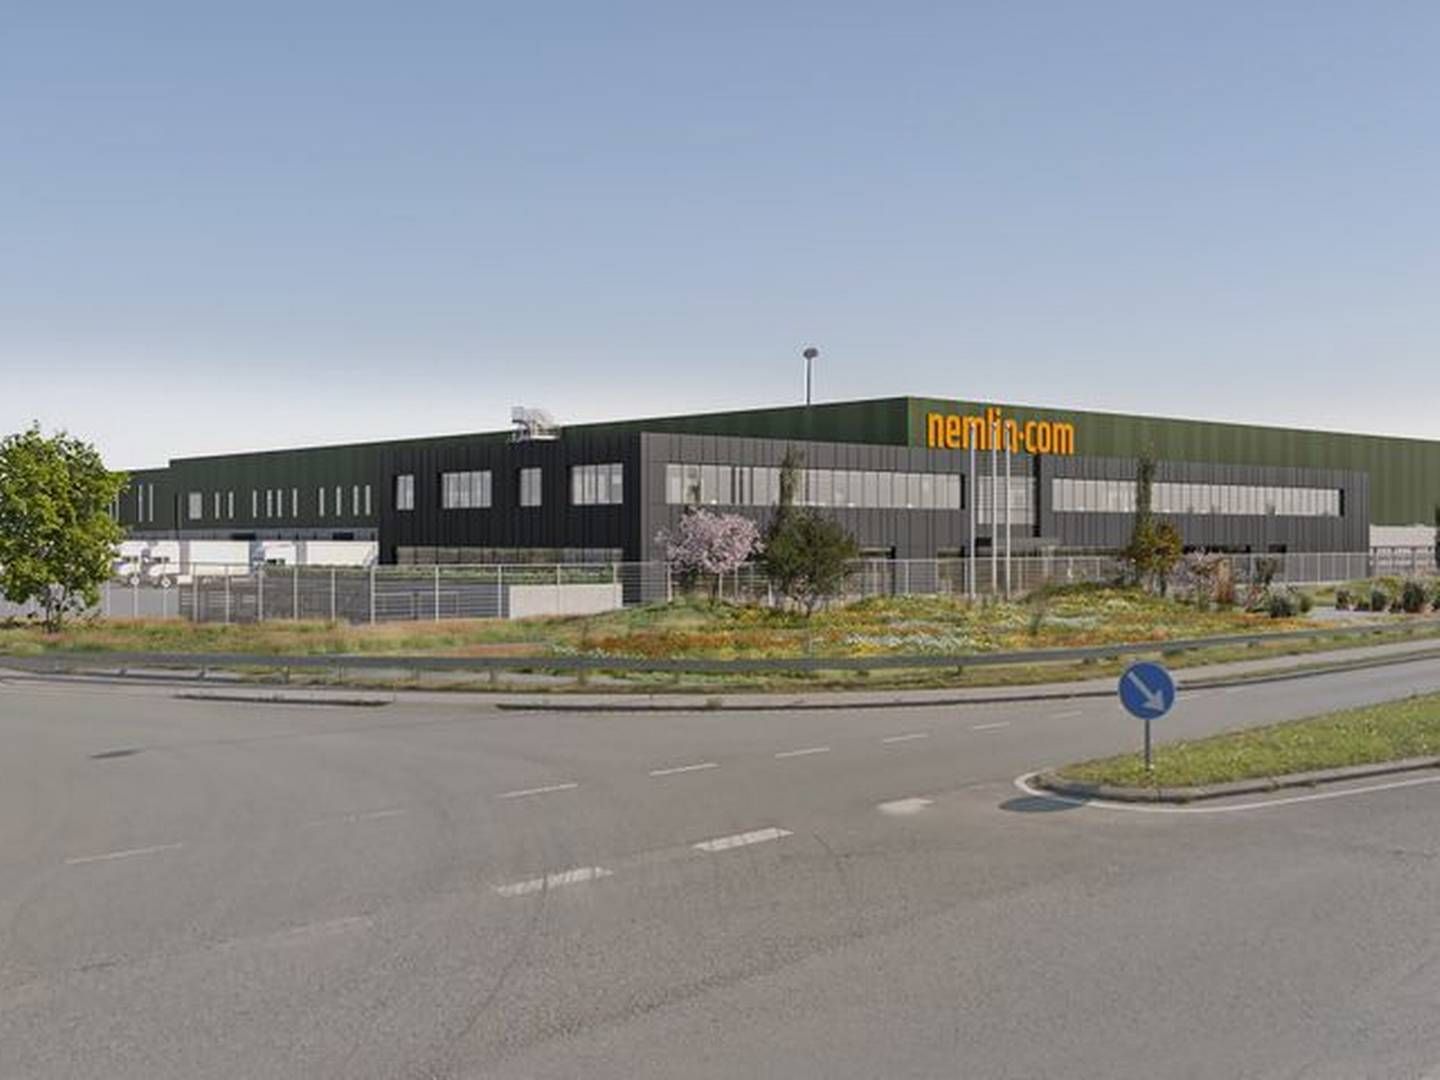 Nemlig.coms lager i Aarslev blev indviet sidste efterår. Nu lukker netsupermarkedet aktiviteterne ned. | Foto: Nemlig.com/pr